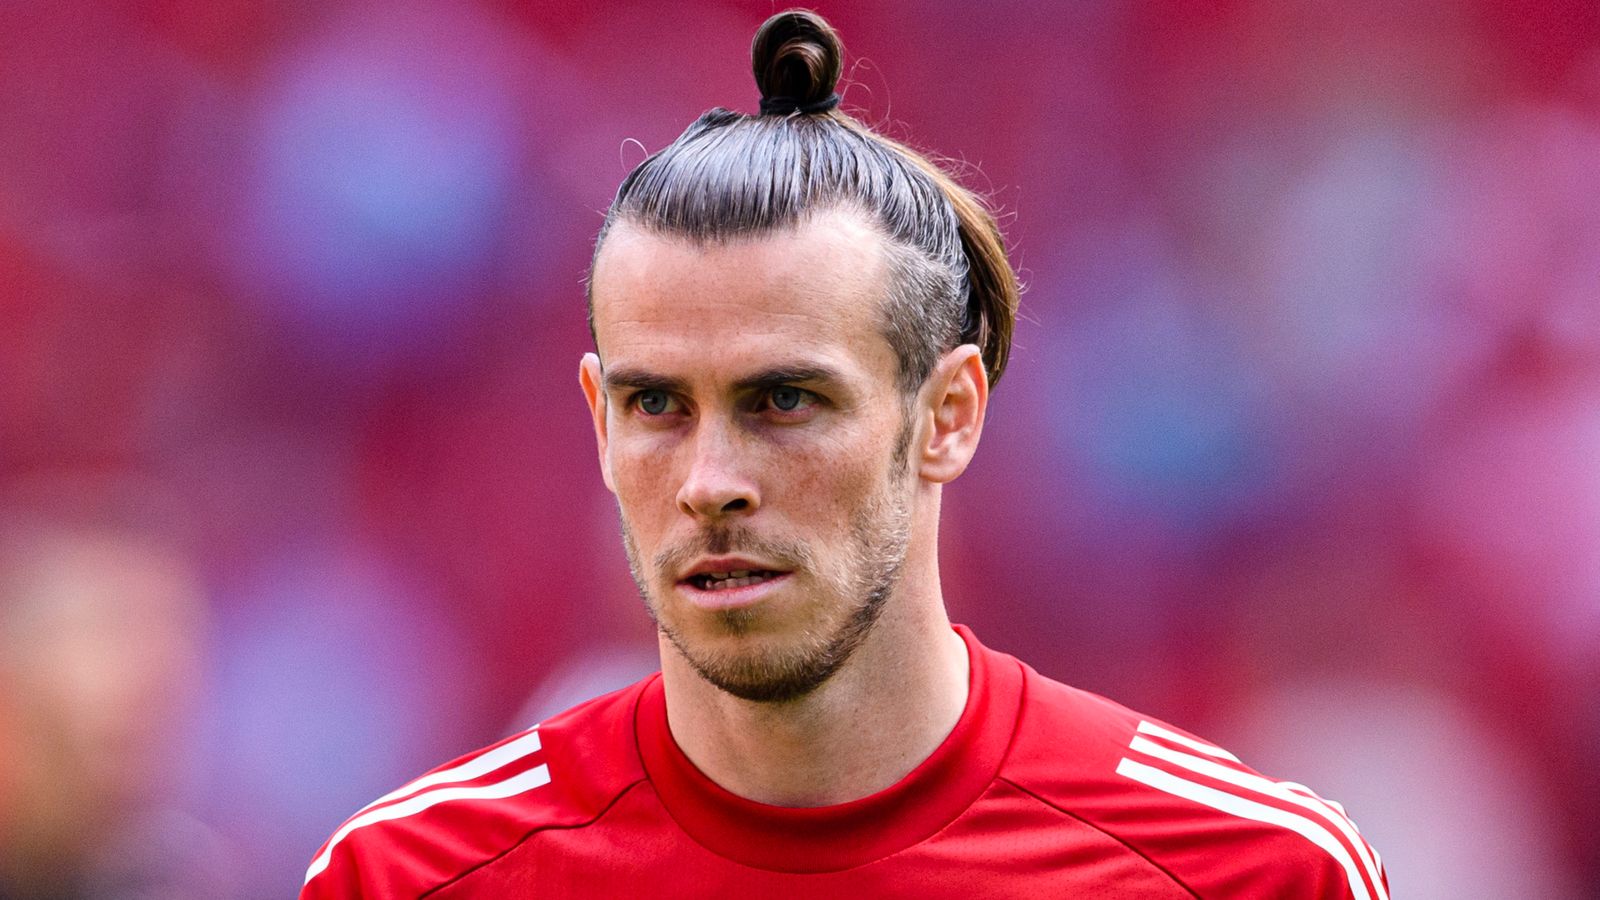 Cầu thủ bóng đá Gareth Bale 